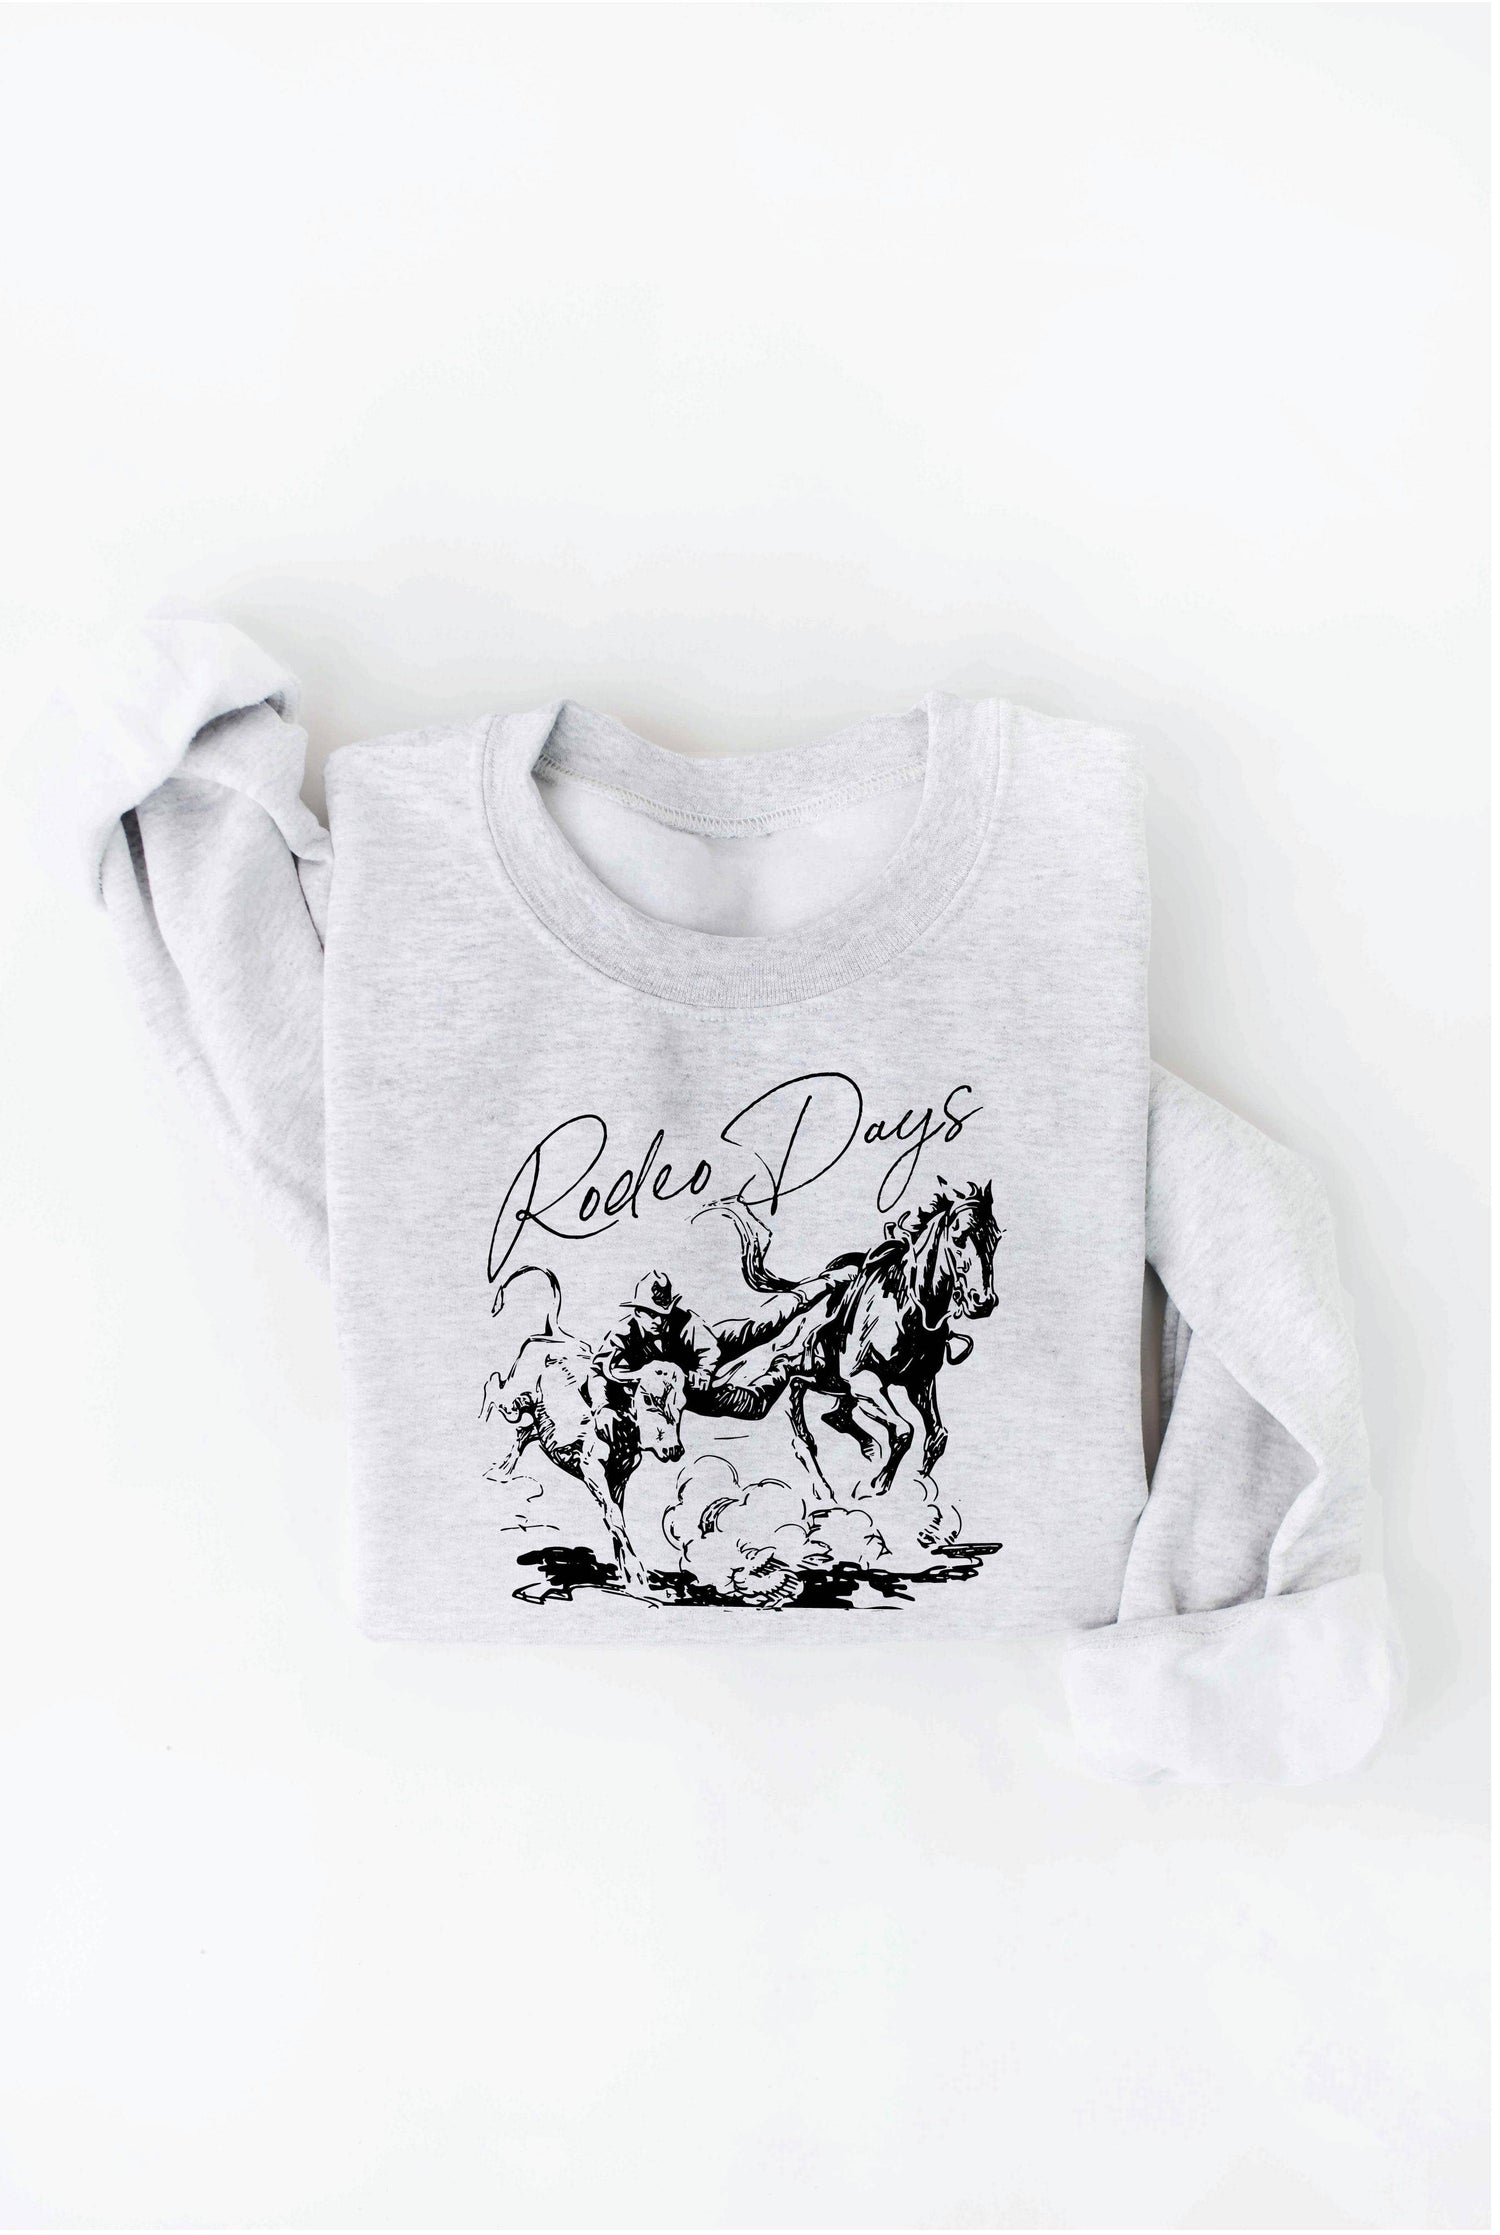 Rodeo Days Graphic Sweatshirt